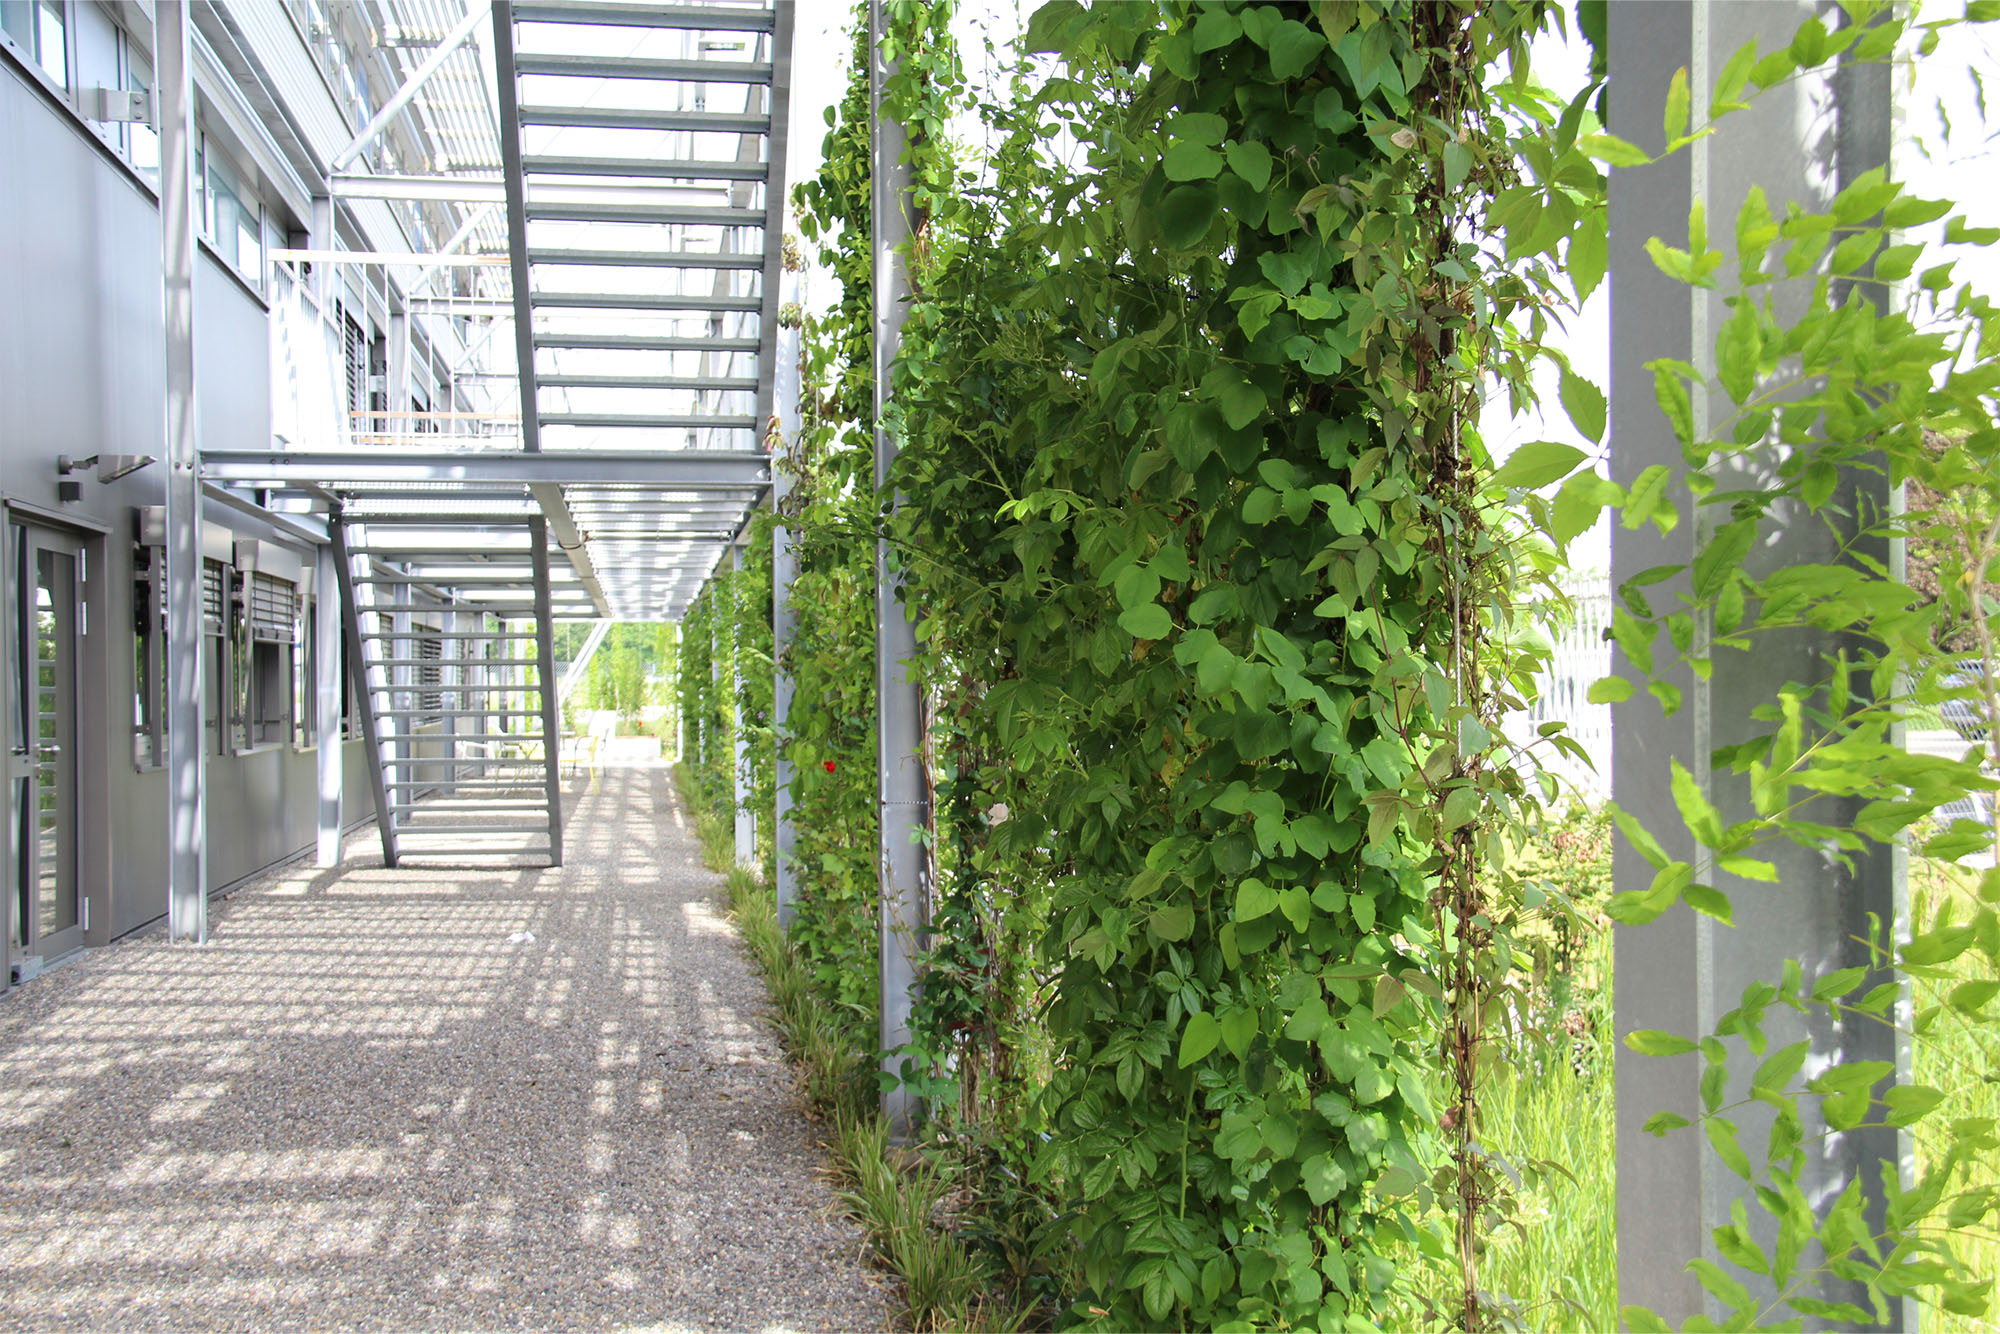 Umgestaltung der Außenanlagen und Neubau Rankgerüst für Kletterpflanzen Cteam in Ummendorf mit integrierten Fluchttreppen